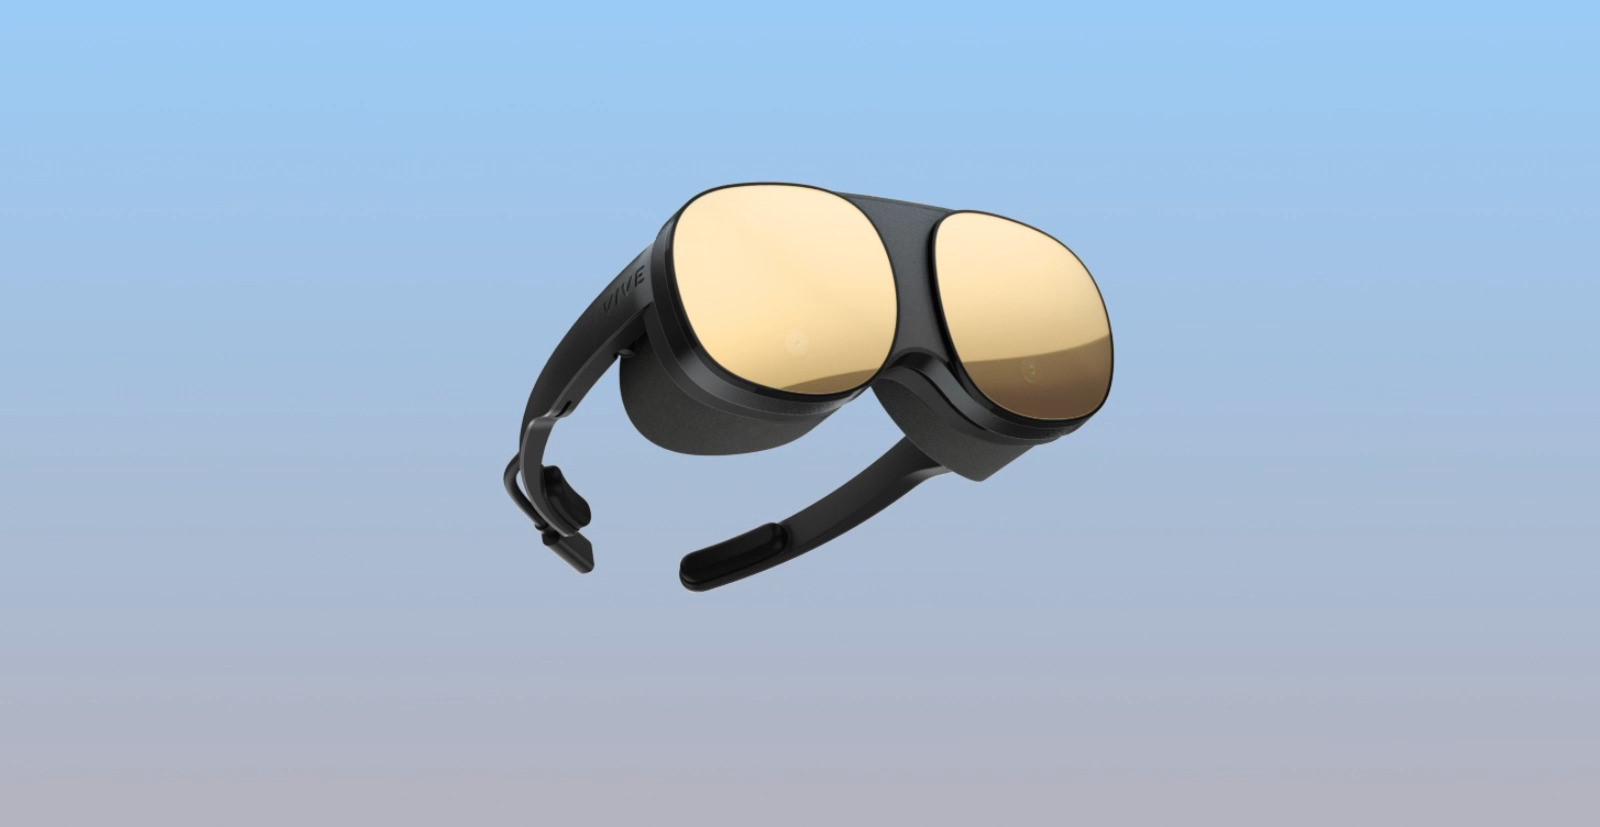 Les nouvelles lunettes immersives Vive Flow de HTC proposent un nouveau format pour les casques de réalité virtuelle. © HTC